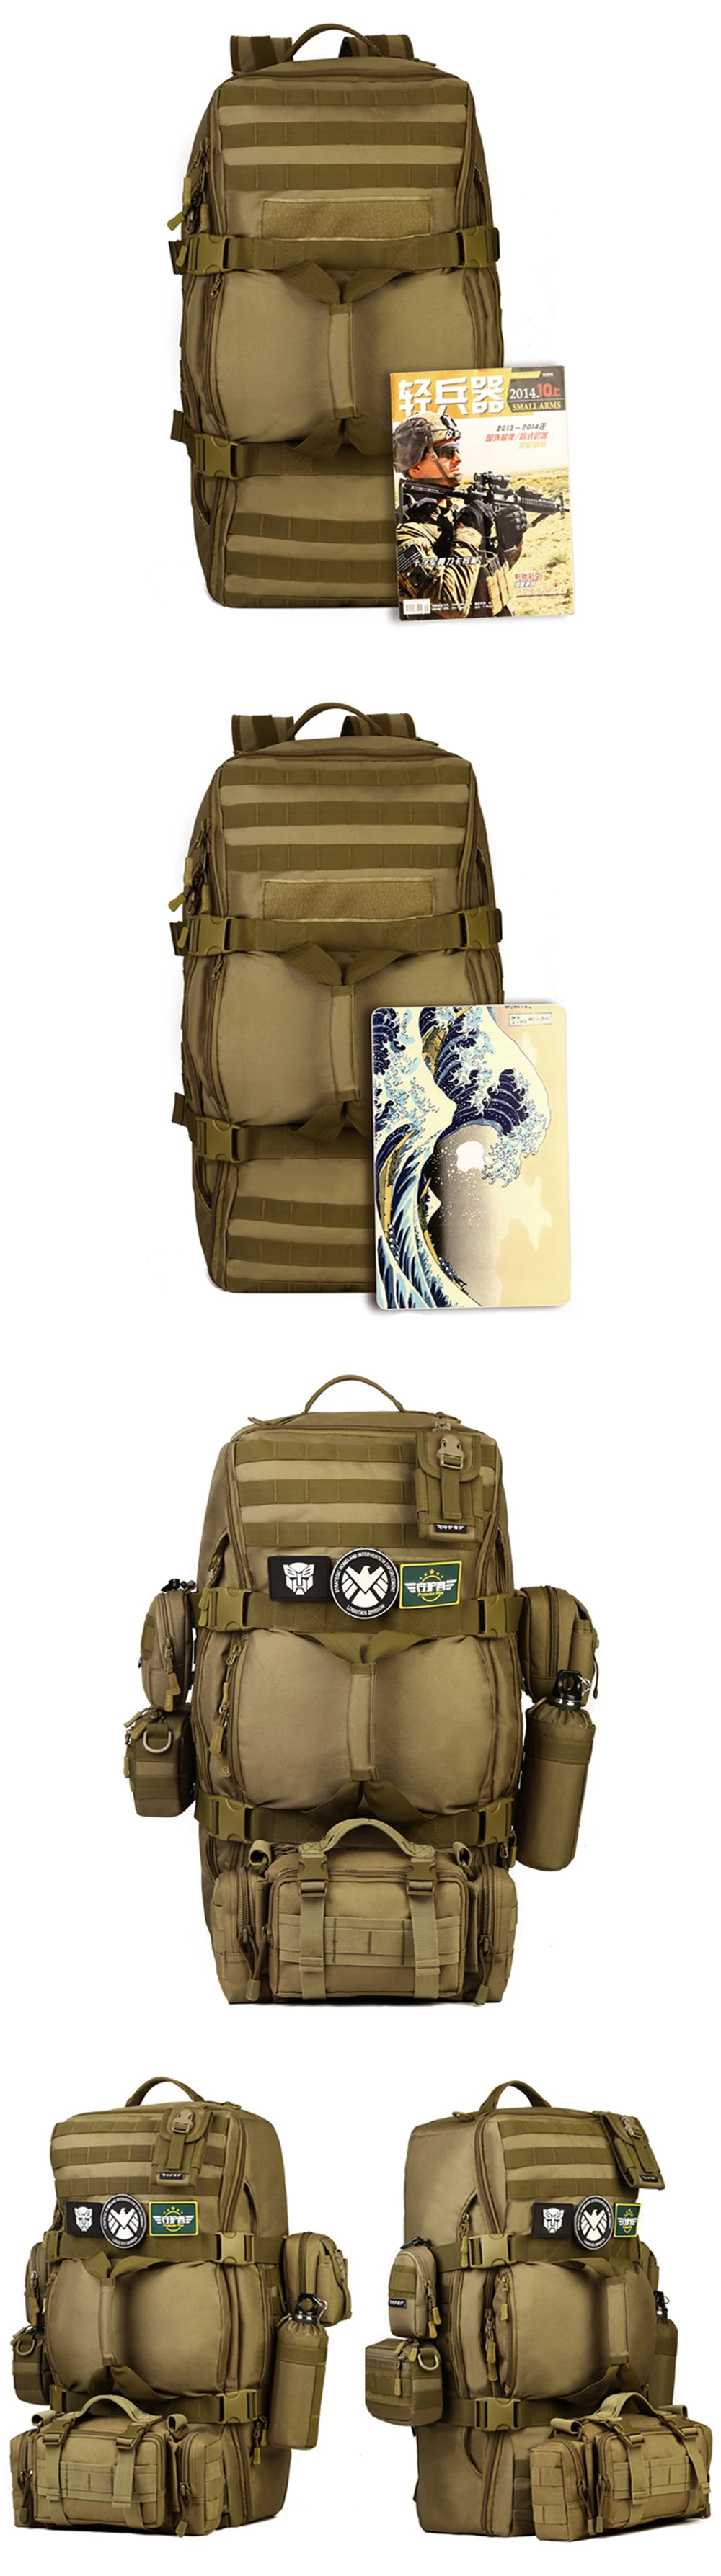 TENNEIGHT 60L военный тактический рюкзак нейлон Для мужчин сумка Водонепроницаемый Спорт Кемпинг Альпинизм рюкзак Открытый Дорожная сумочка